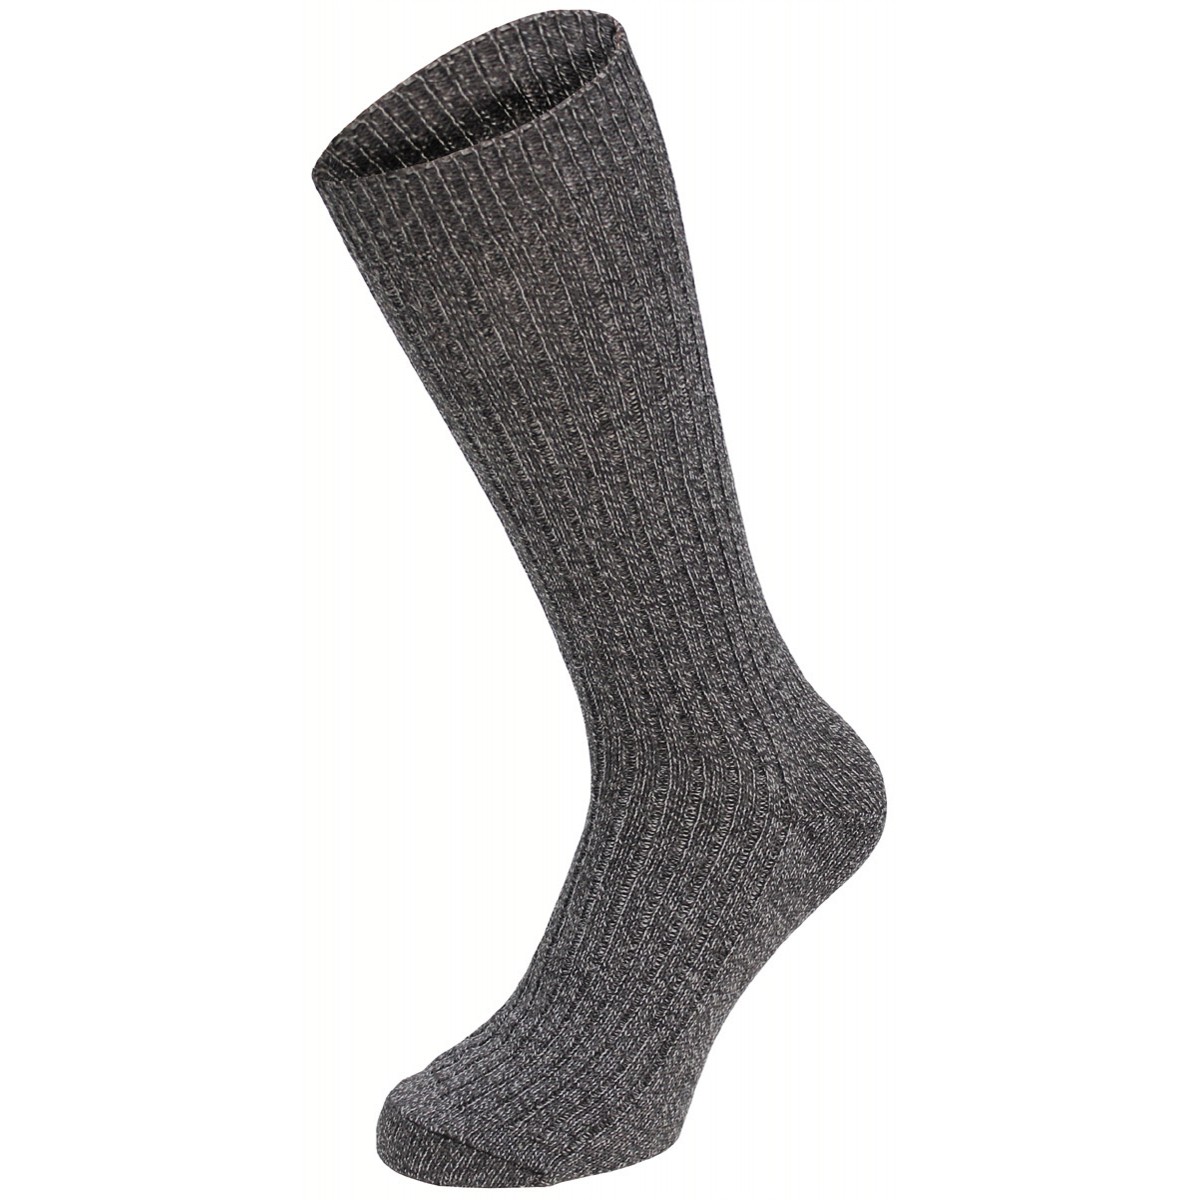 Ponožky styl BW s patou extra vysoké - šedé, 47-48